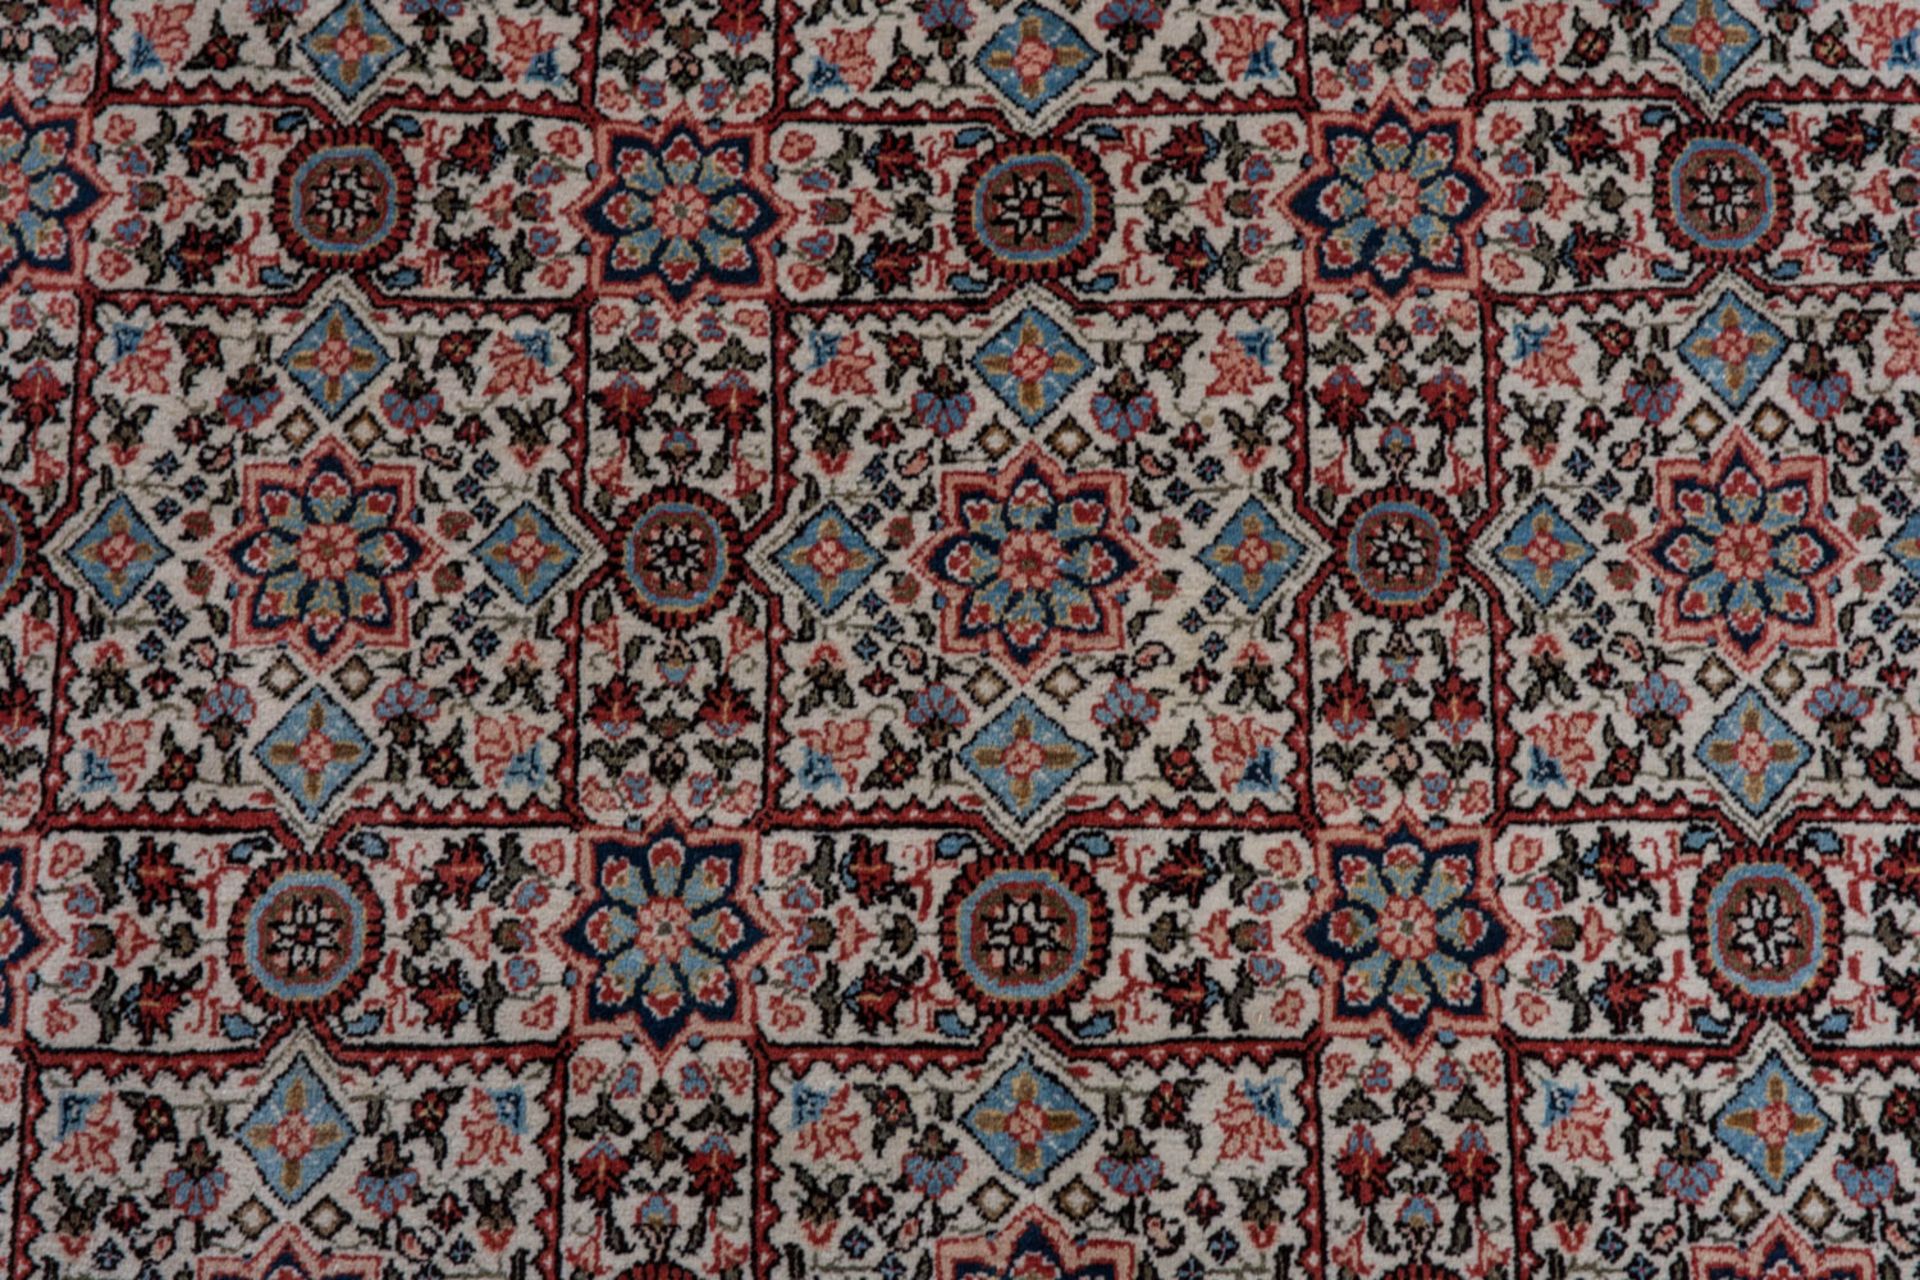 Großer Teppich in rot und blau, Baumwolle.360 x 337 cm - Bild 4 aus 8